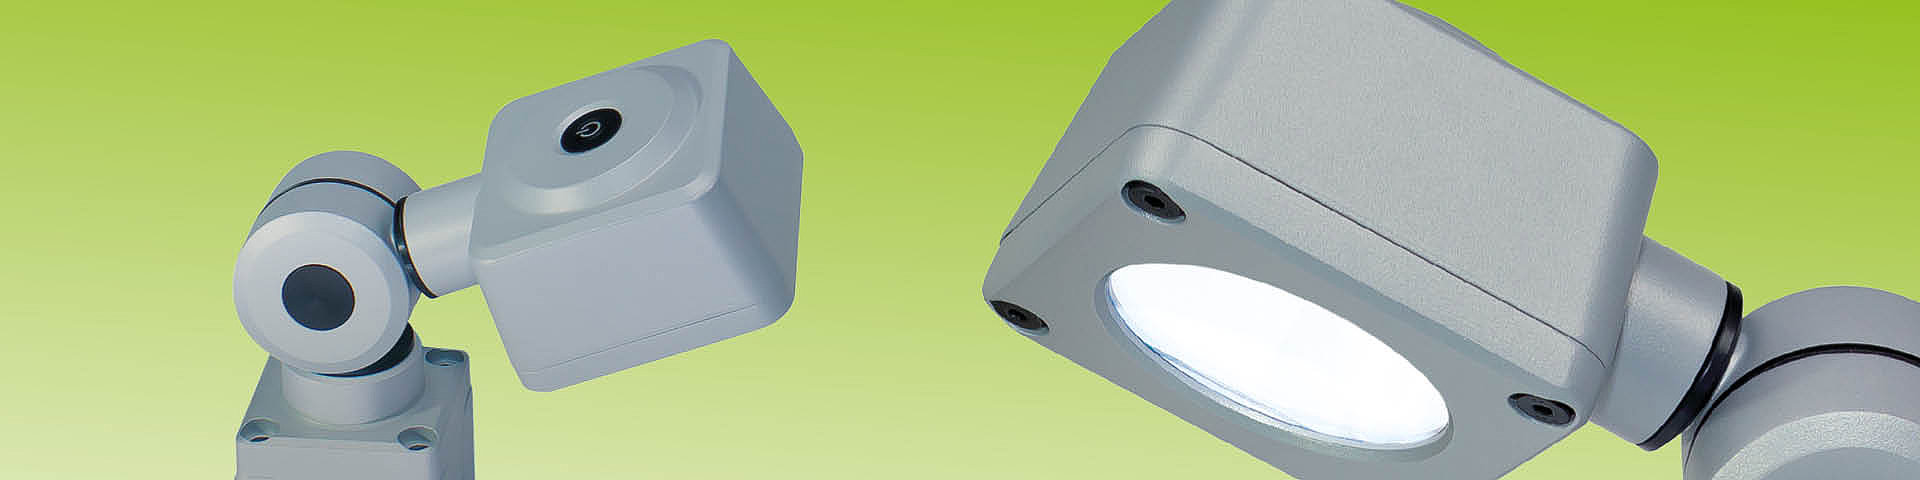 Illustration de la lampe à LED pour machines | Lampe à LED pour poste de travail | Tête articulée CENALED - LED2WORK